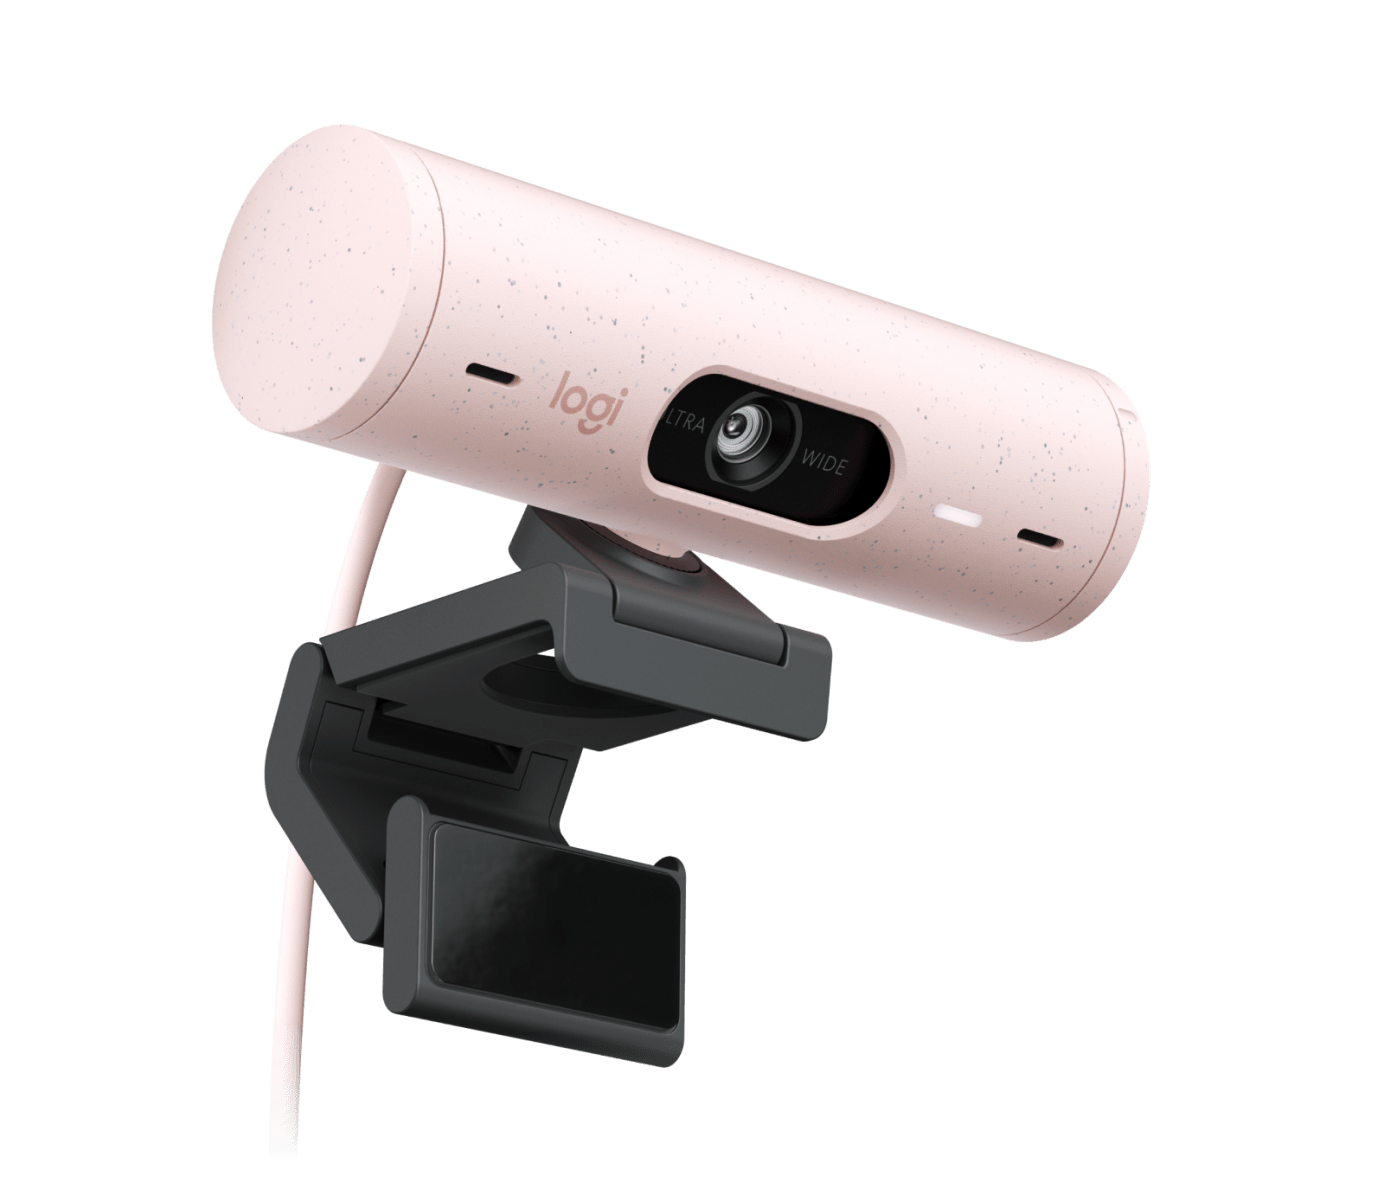 Logitech BRIO 500 Webcam